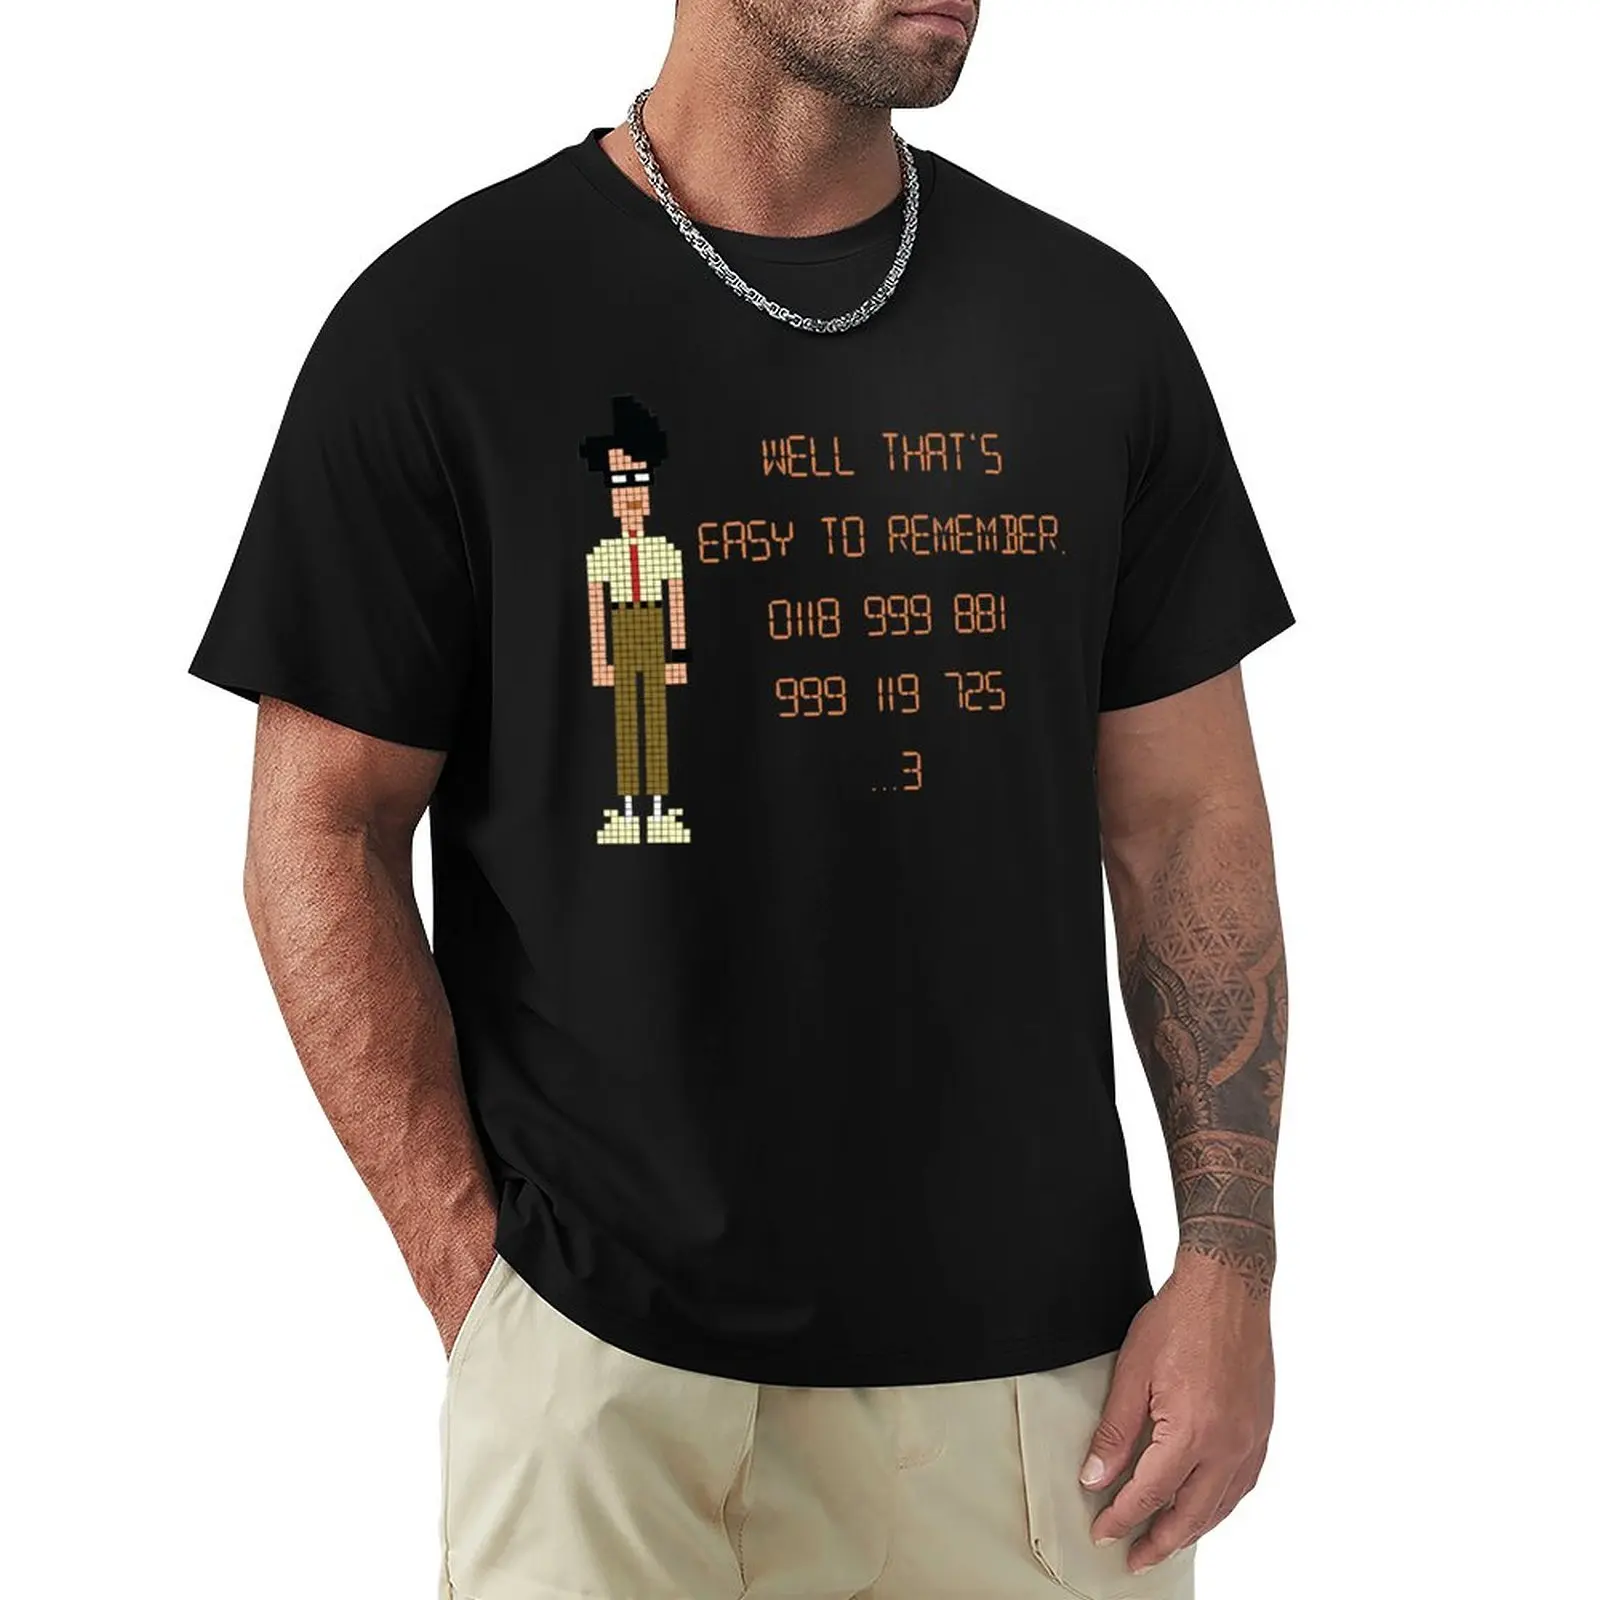 

The IT толпа-0118 999 881 999 119 725 …3 футболка, летний топ, эстетическая одежда, мужская одежда